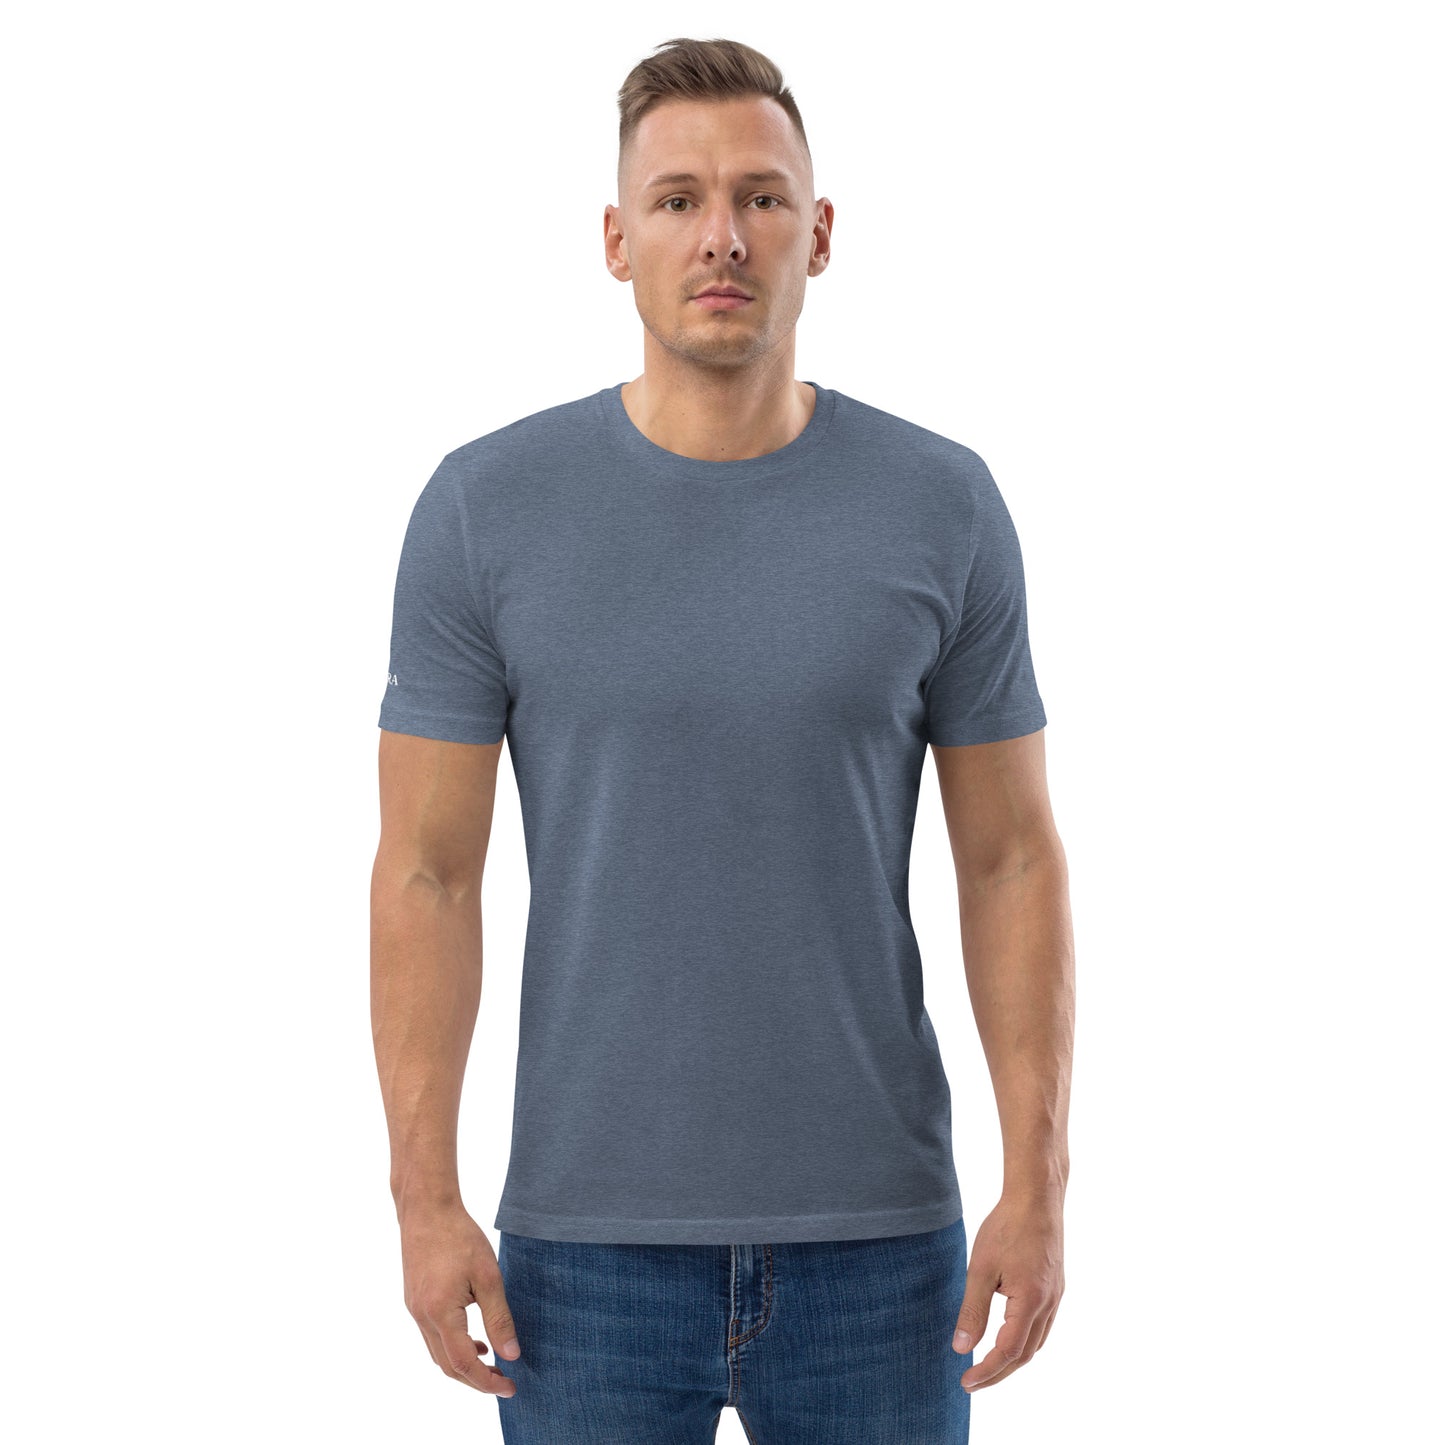 T-shirt homme en coton biologique